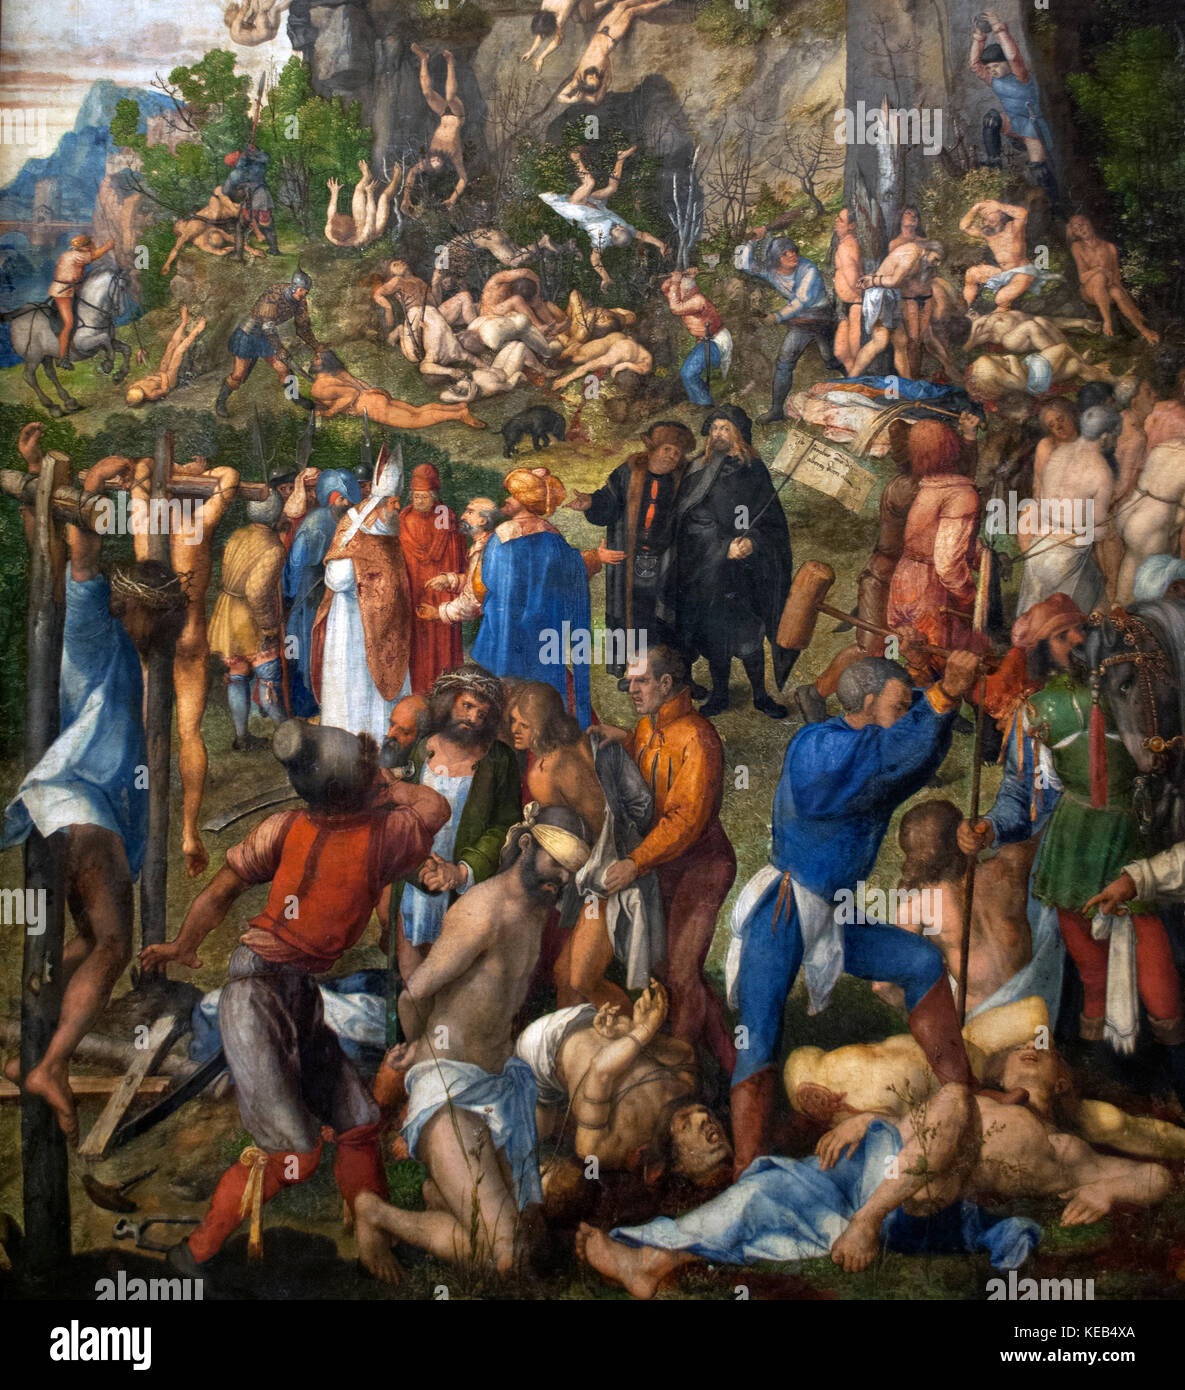 Albrecht durer (1471-1528) peintre allemand de la renaissance.. le martyre des dix mille, 1508. L'histoire de l'Art Museum de Vienne. L'autriche.. Banque D'Images